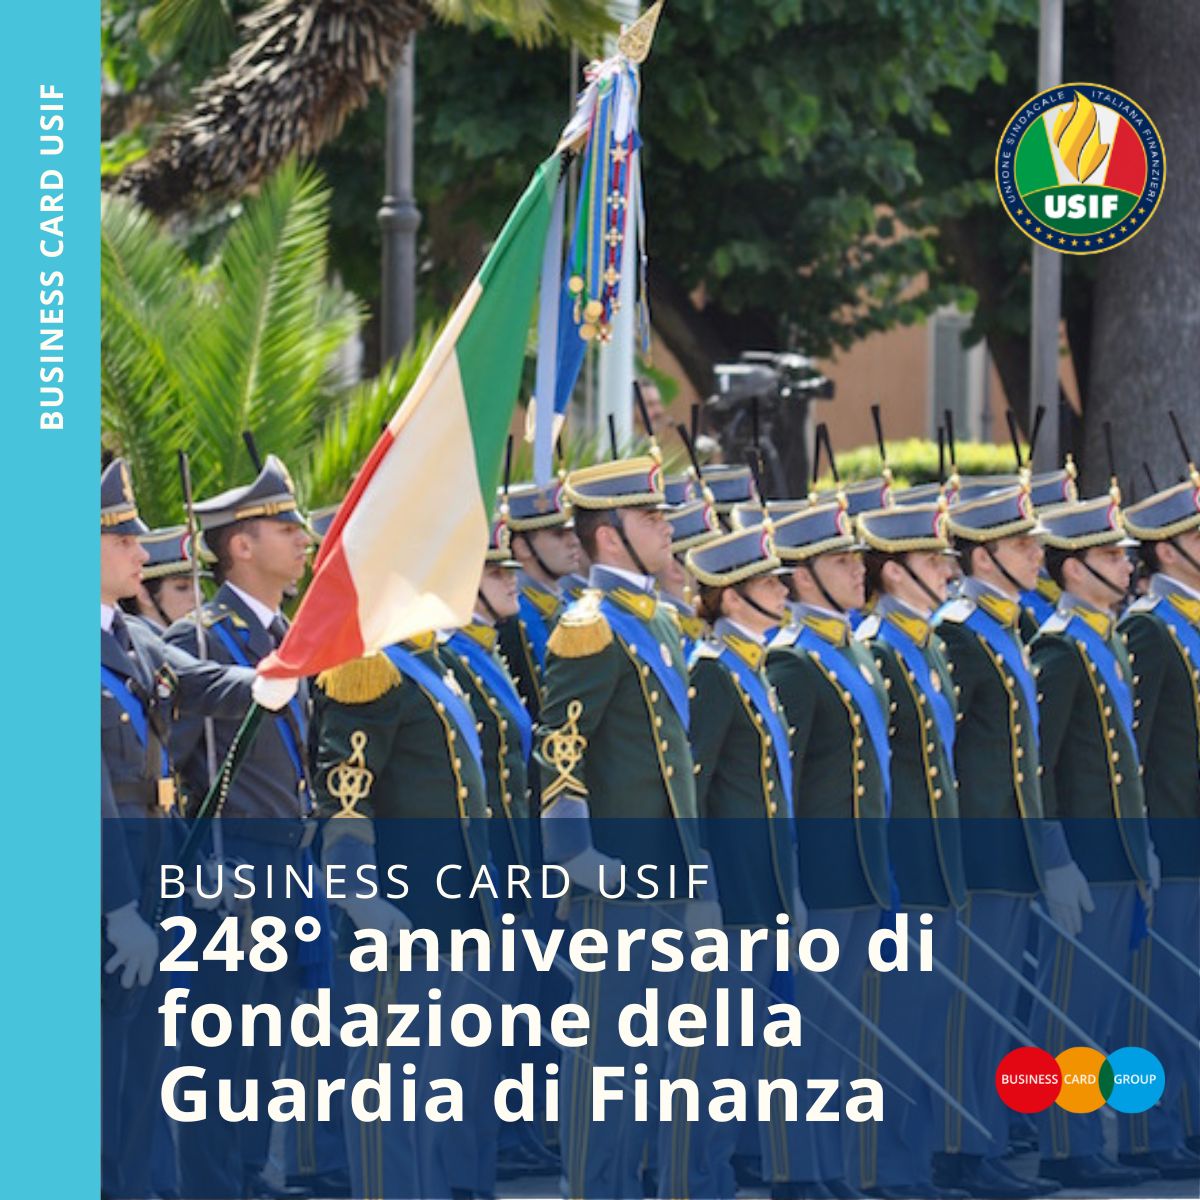 21 giugno - 248° anniversario di fondazione della Guardia di Finanza